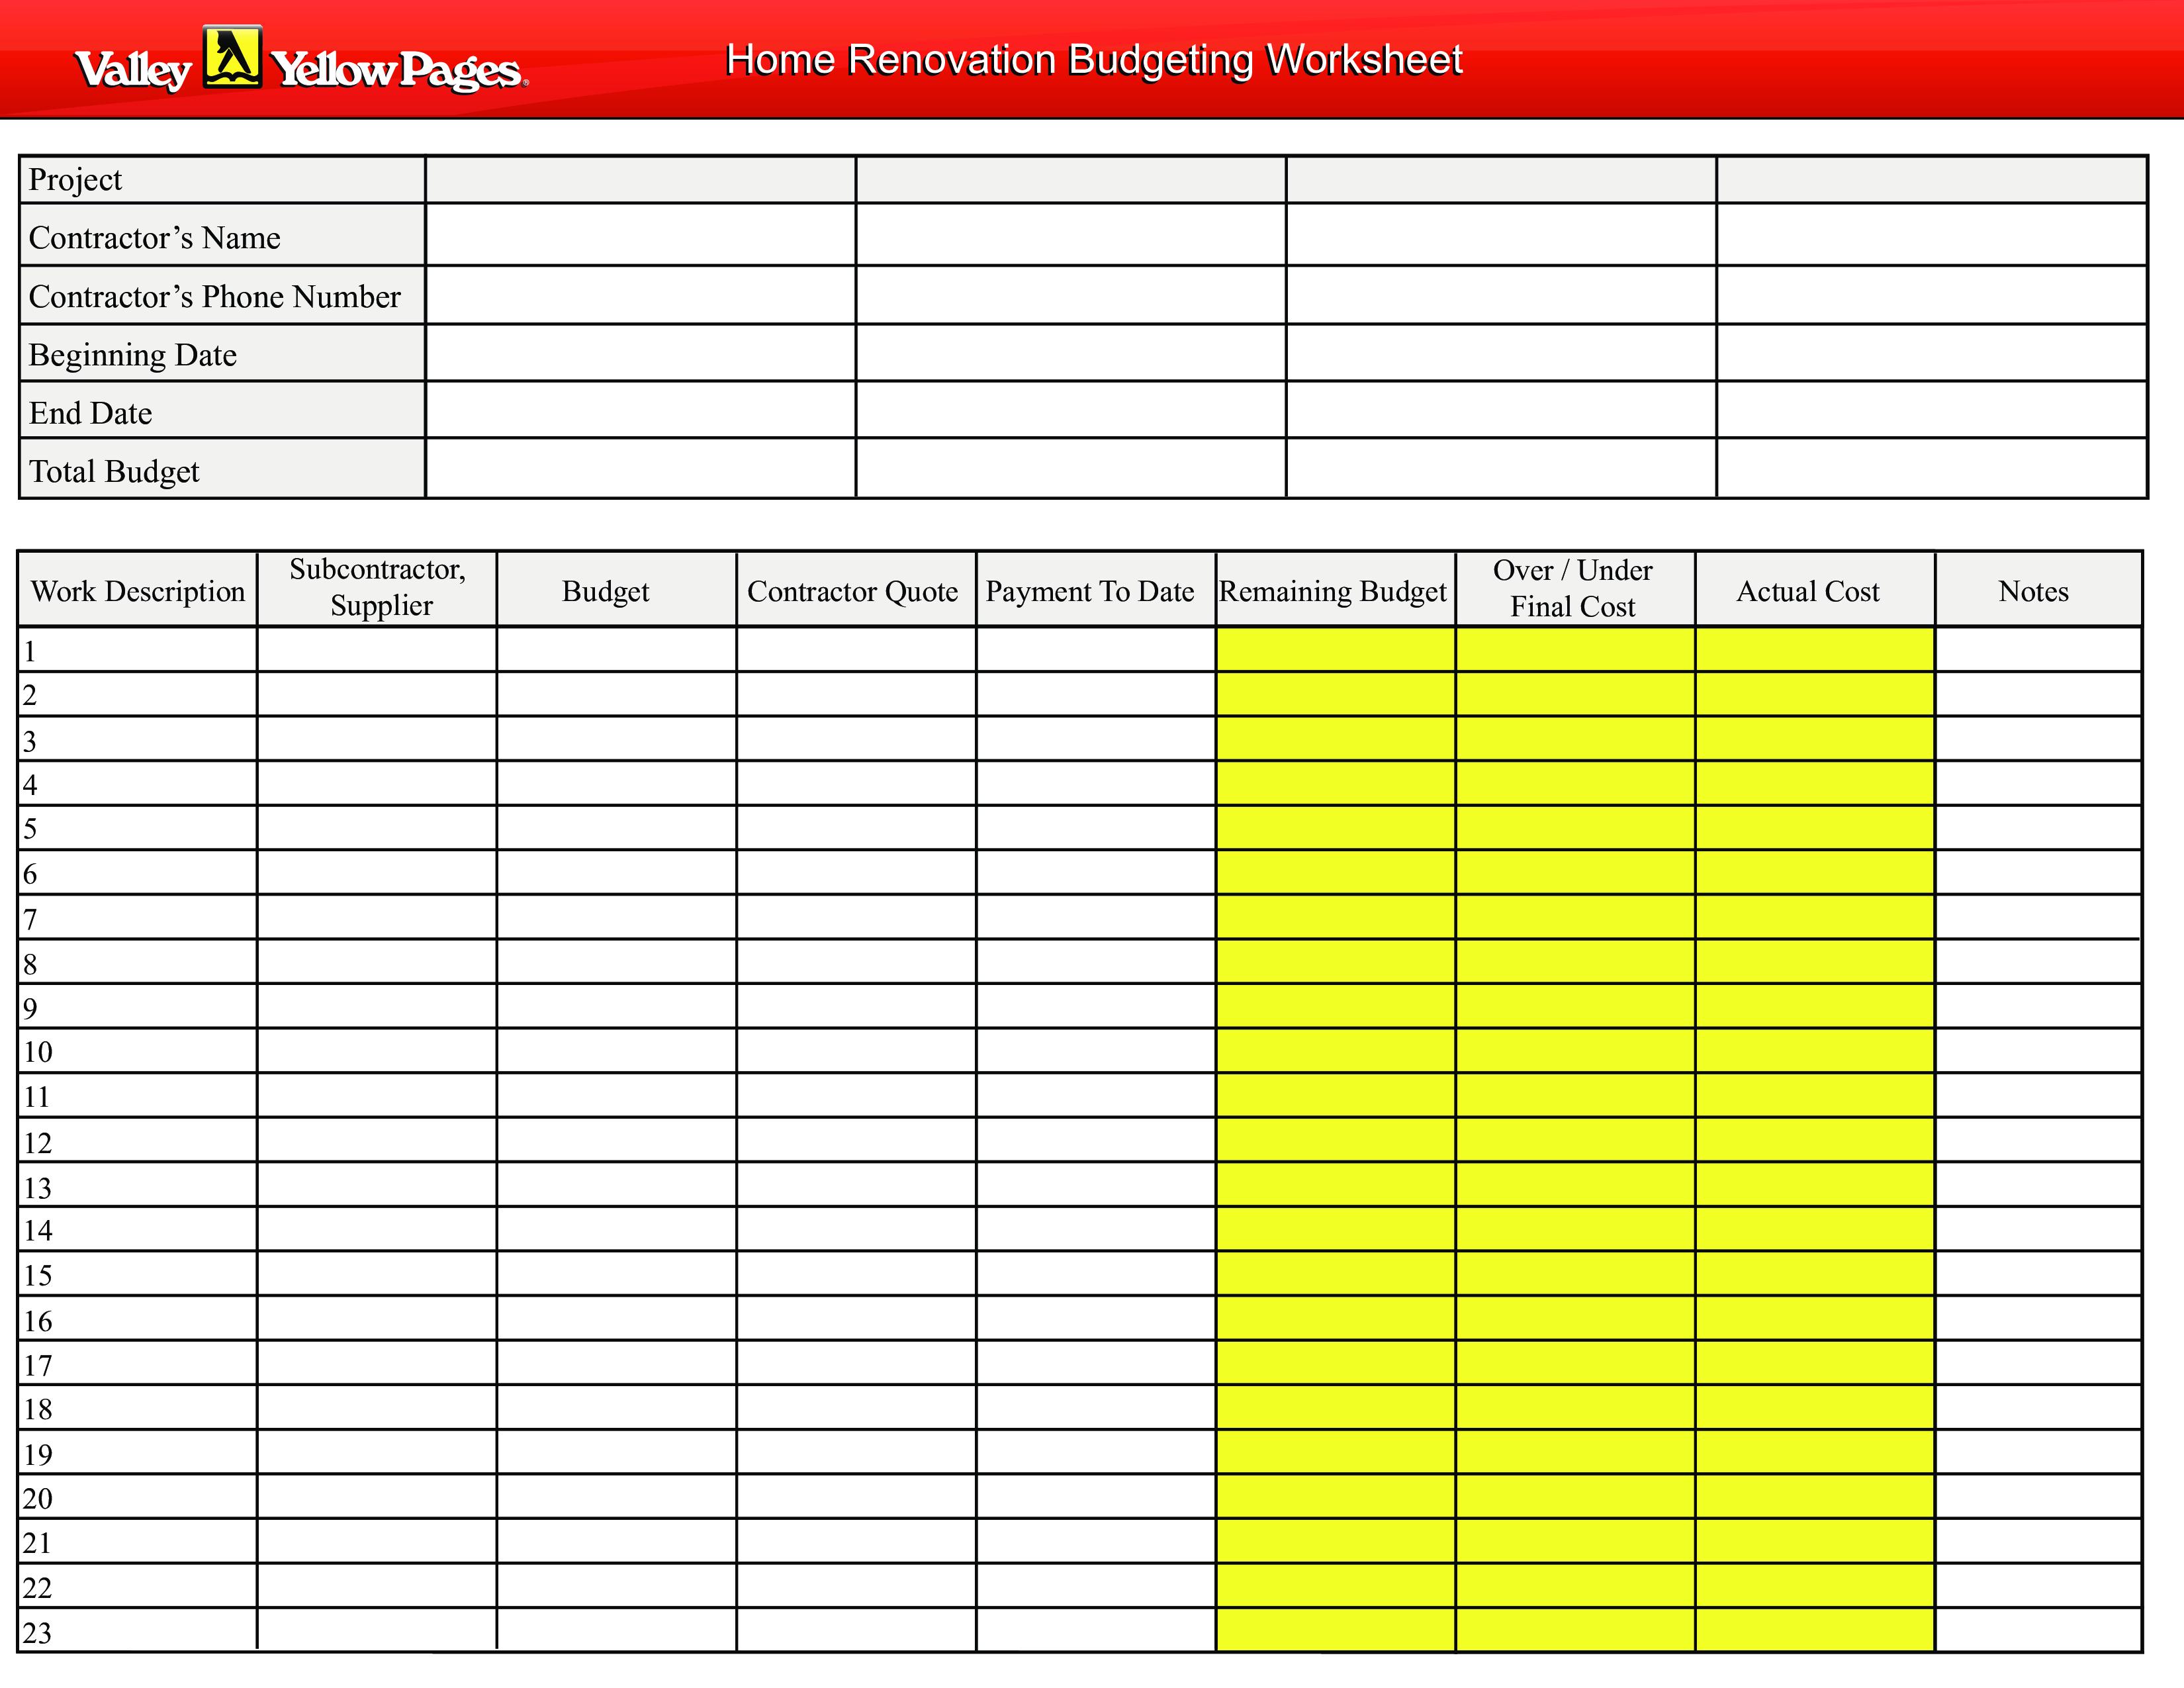 Home Renovation Budget Worksheet Templates at allbusinesstemplates com